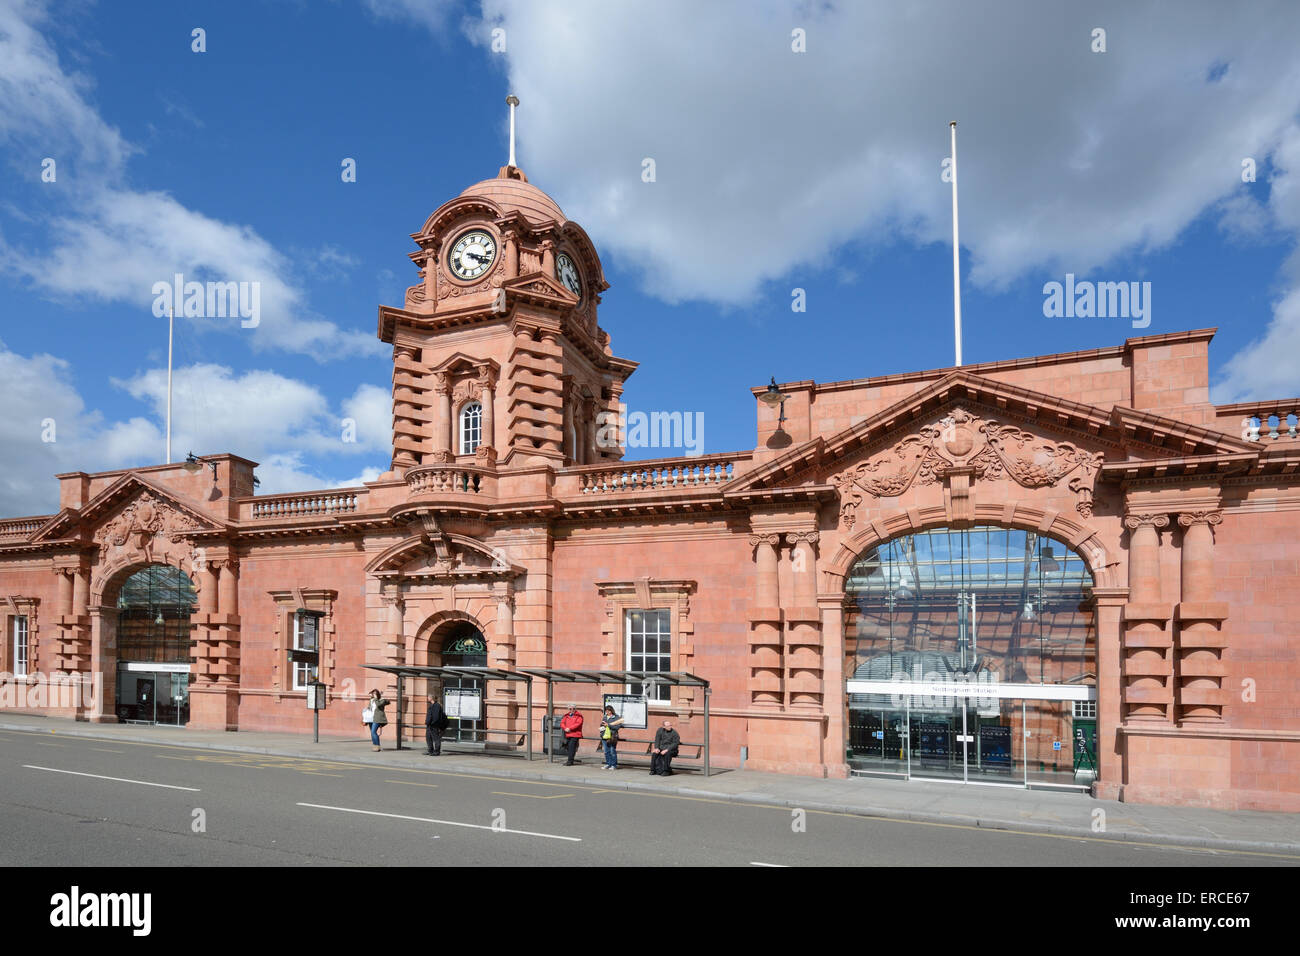 Nottingham Railway Station, recently refurbished. Nottingham, England. Stock Photo